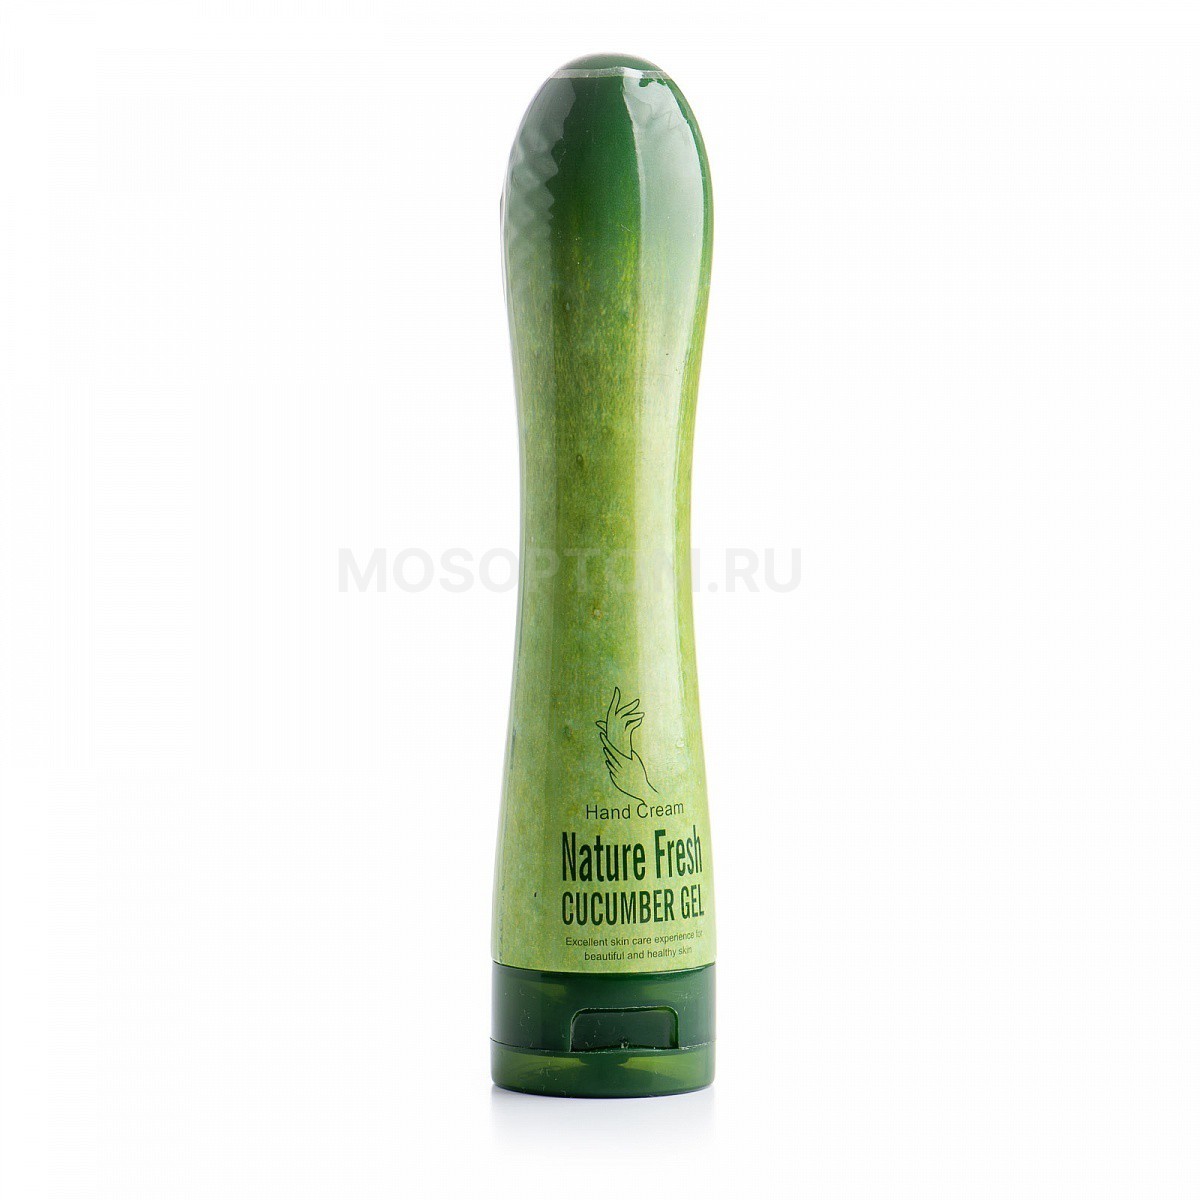 Гель для рук с экстрактом огурца Hand Cream Nature Fresh Cucumber Gel 100г оптом